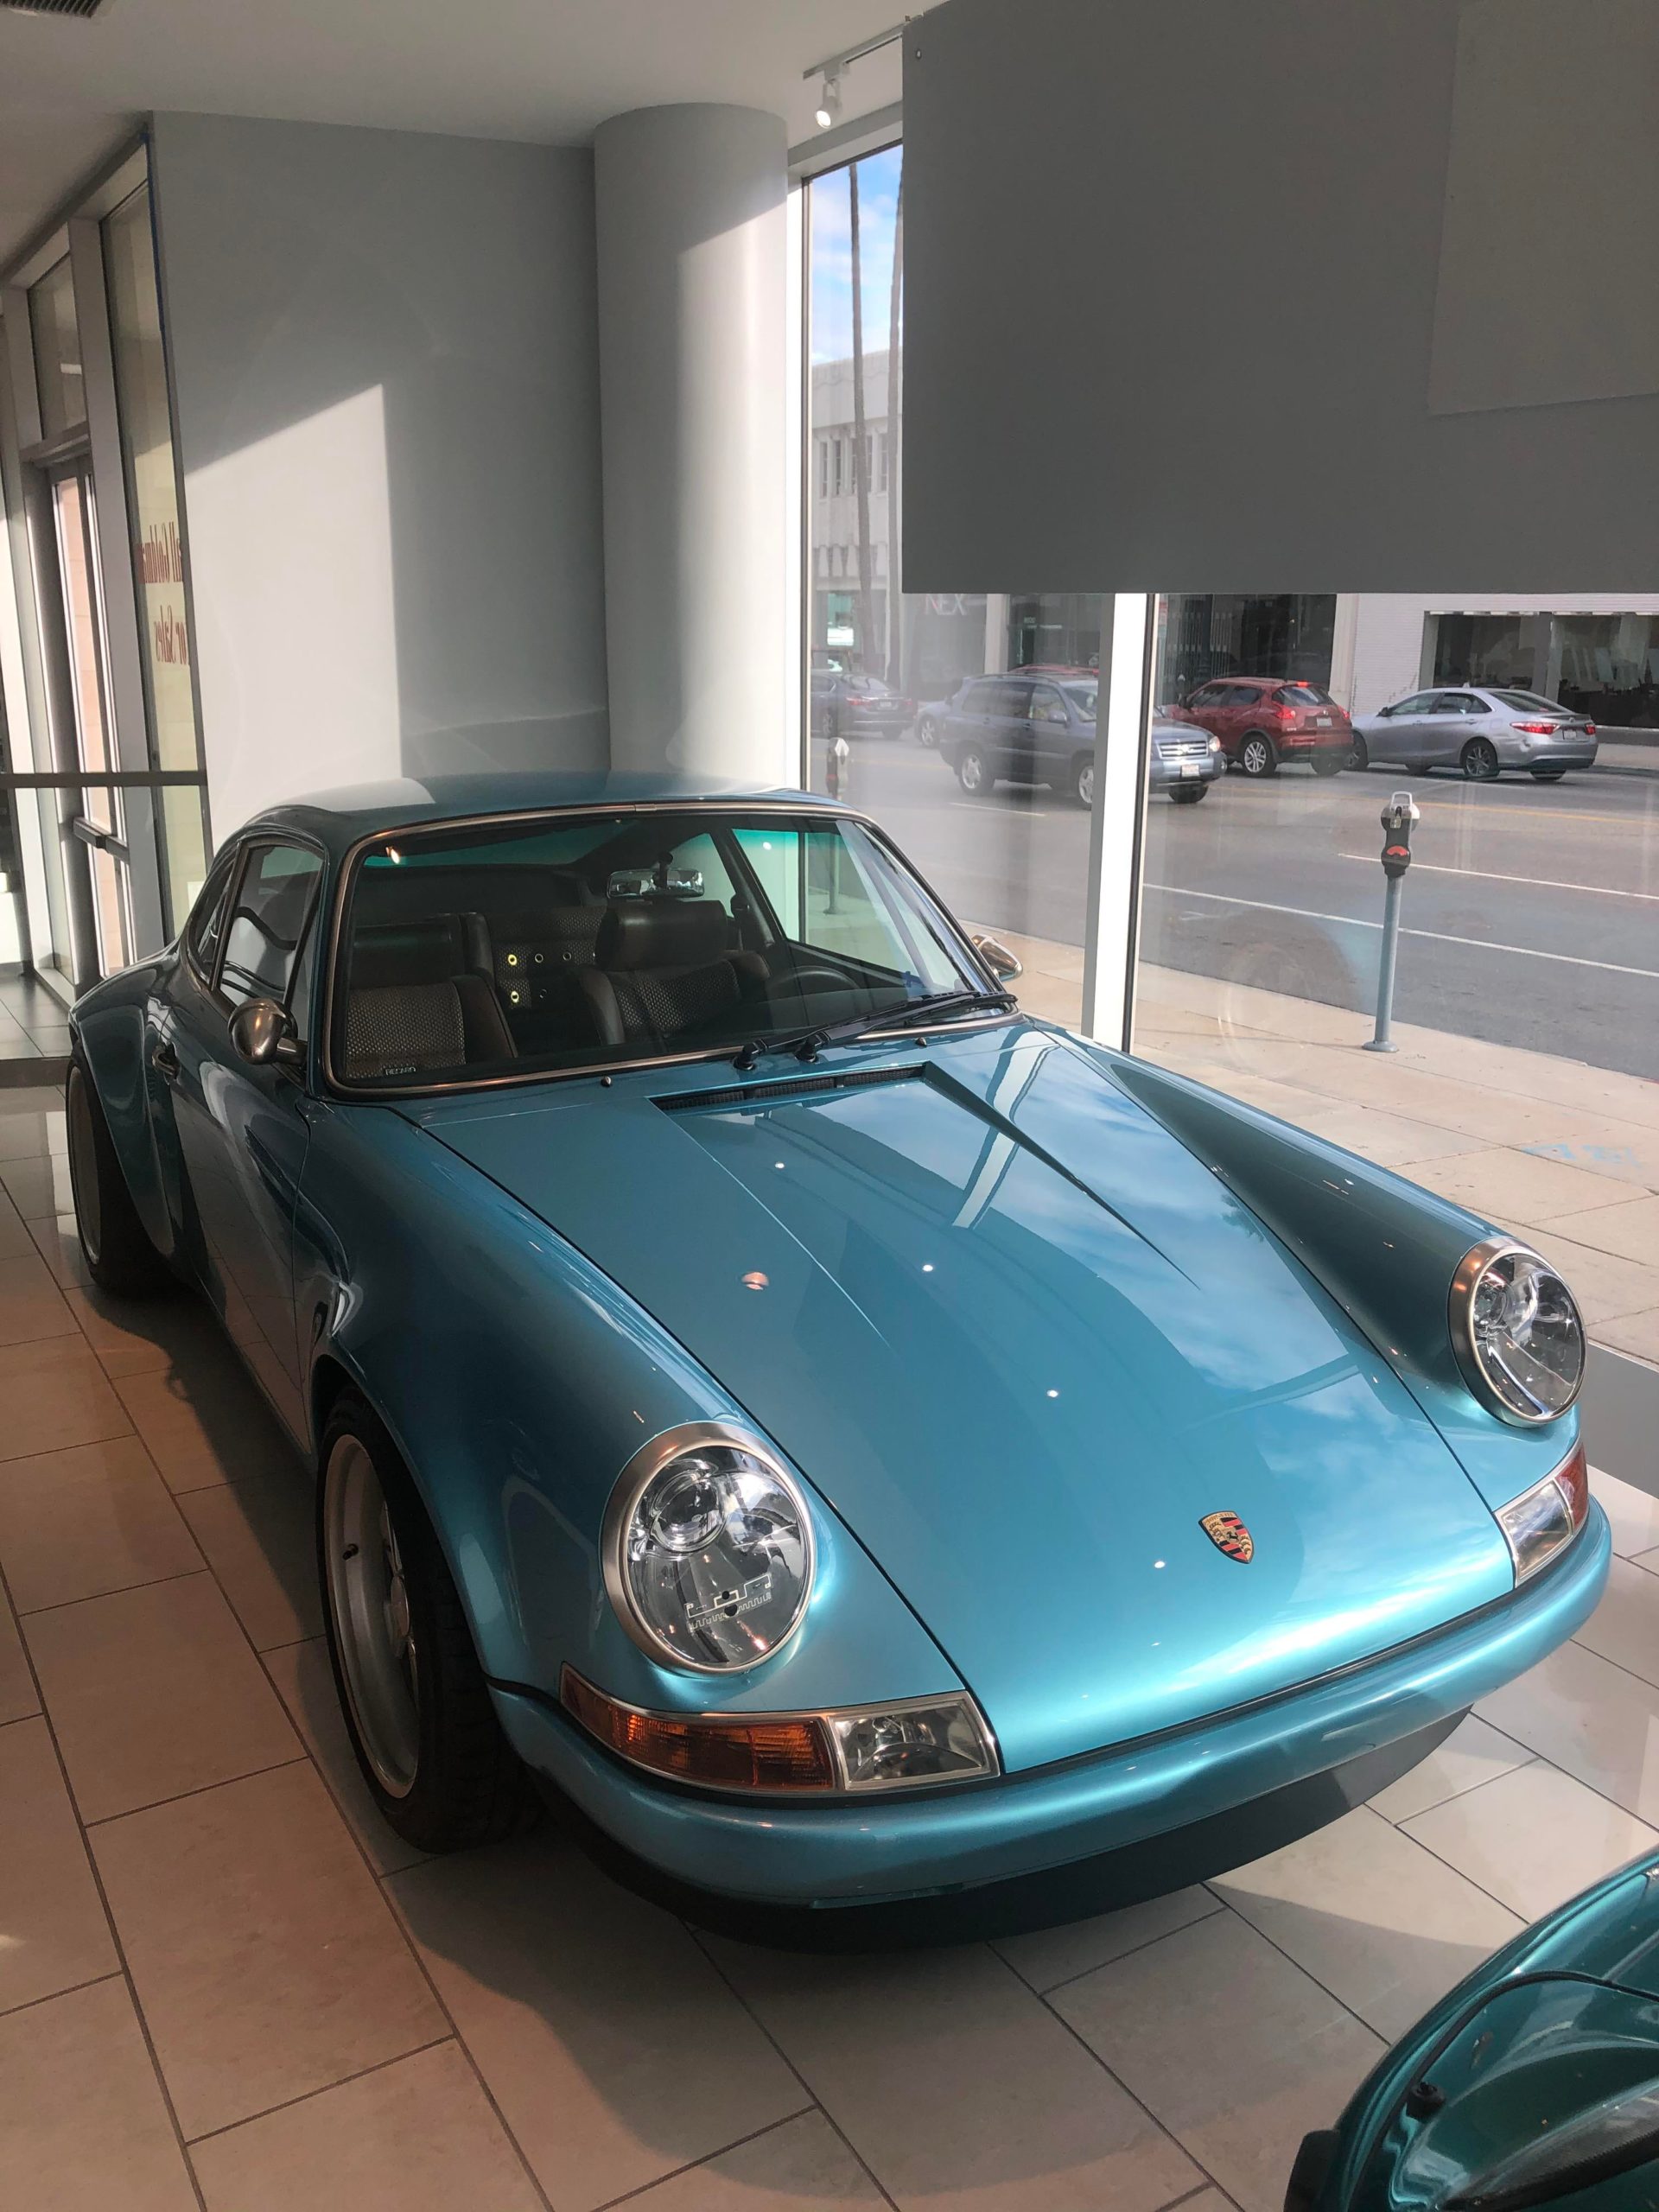 Amazing blue on this Porsche Singer